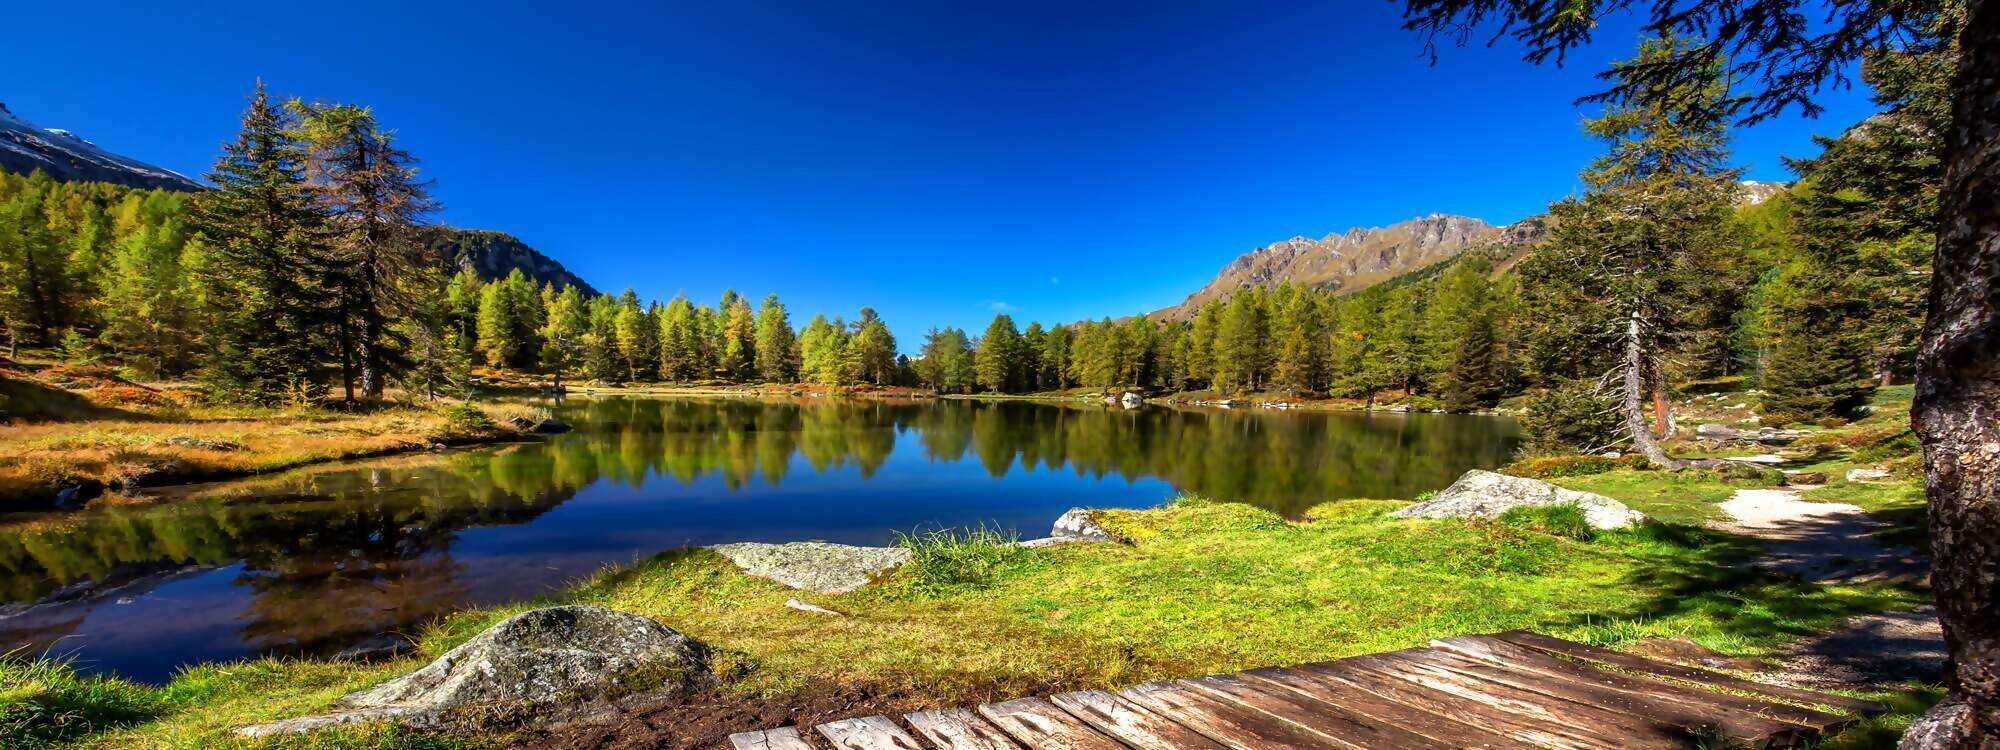 Pauschal - Unterkunft für die Feriendestination Tirol suchen, die besten Angebote vergleichen & reservieren! Viel Spaß beim Urlaub buchen!